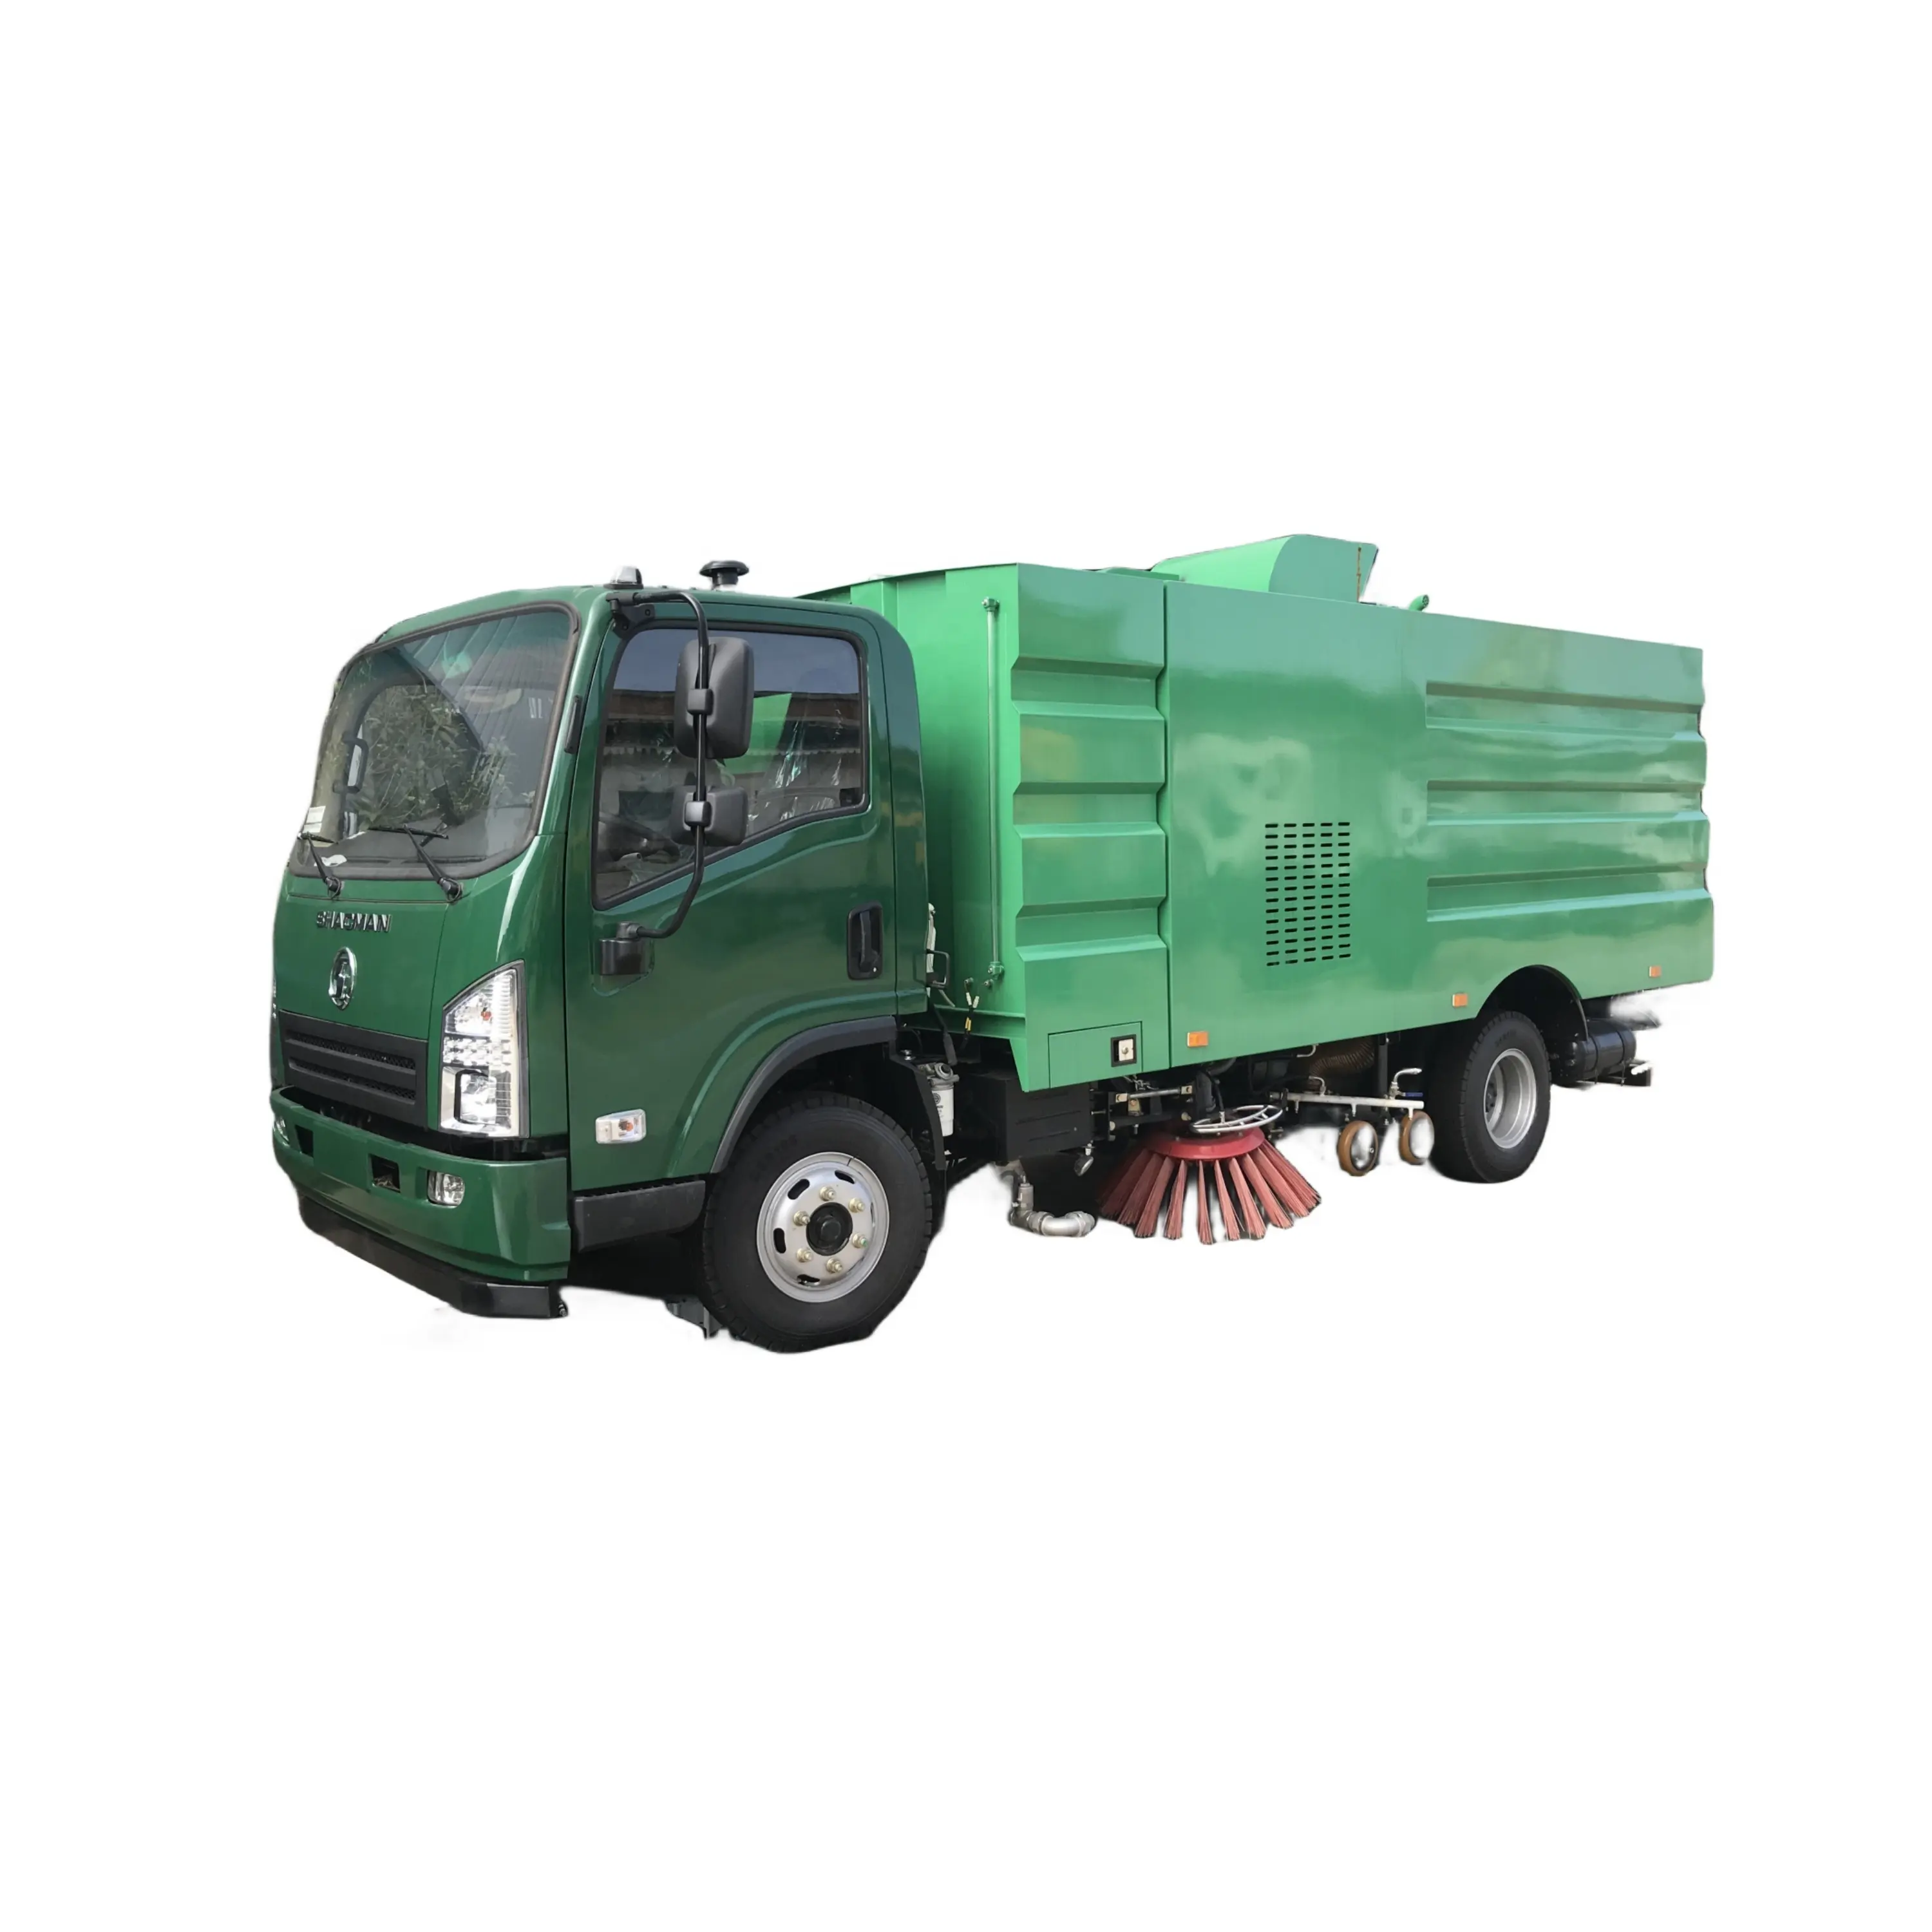 शेकमैन 9 सीबीएम स्ट्रीट स्वीपर ट्रक 9 टन पानी की टंकी रोड स्वीपर सफाई लाइट 9 सीबीएम रोड स्वीपर ट्रक बिक्री के लिए